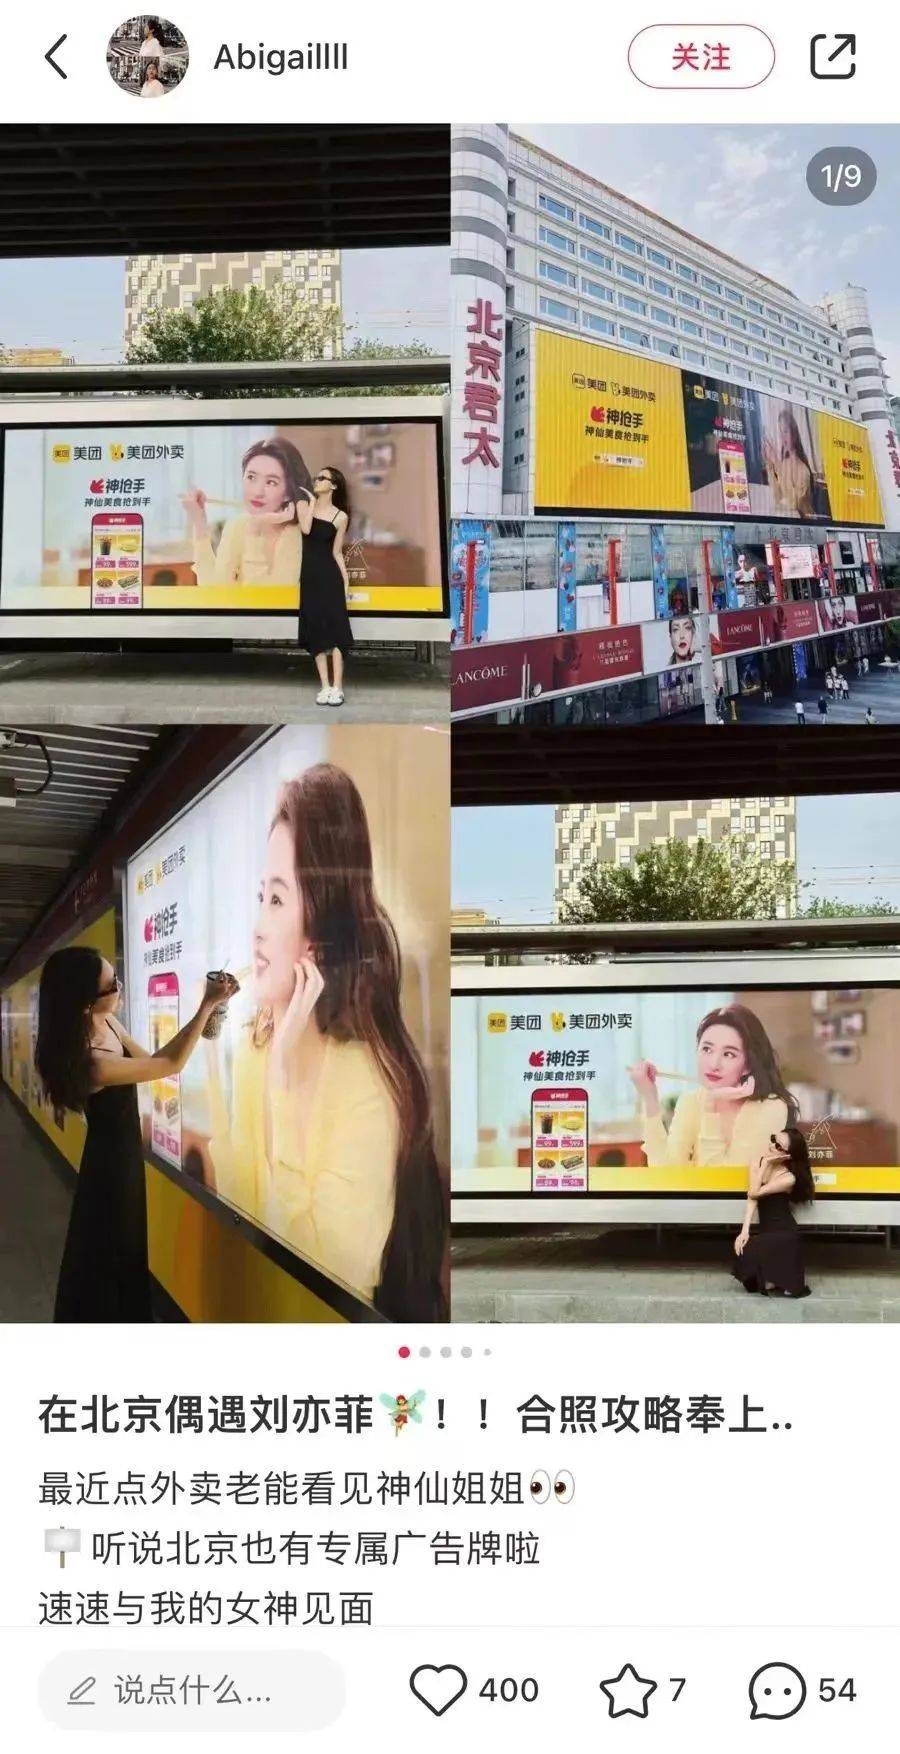 看完美团外卖和刘亦菲的新广告，想点外卖了-15.jpeg